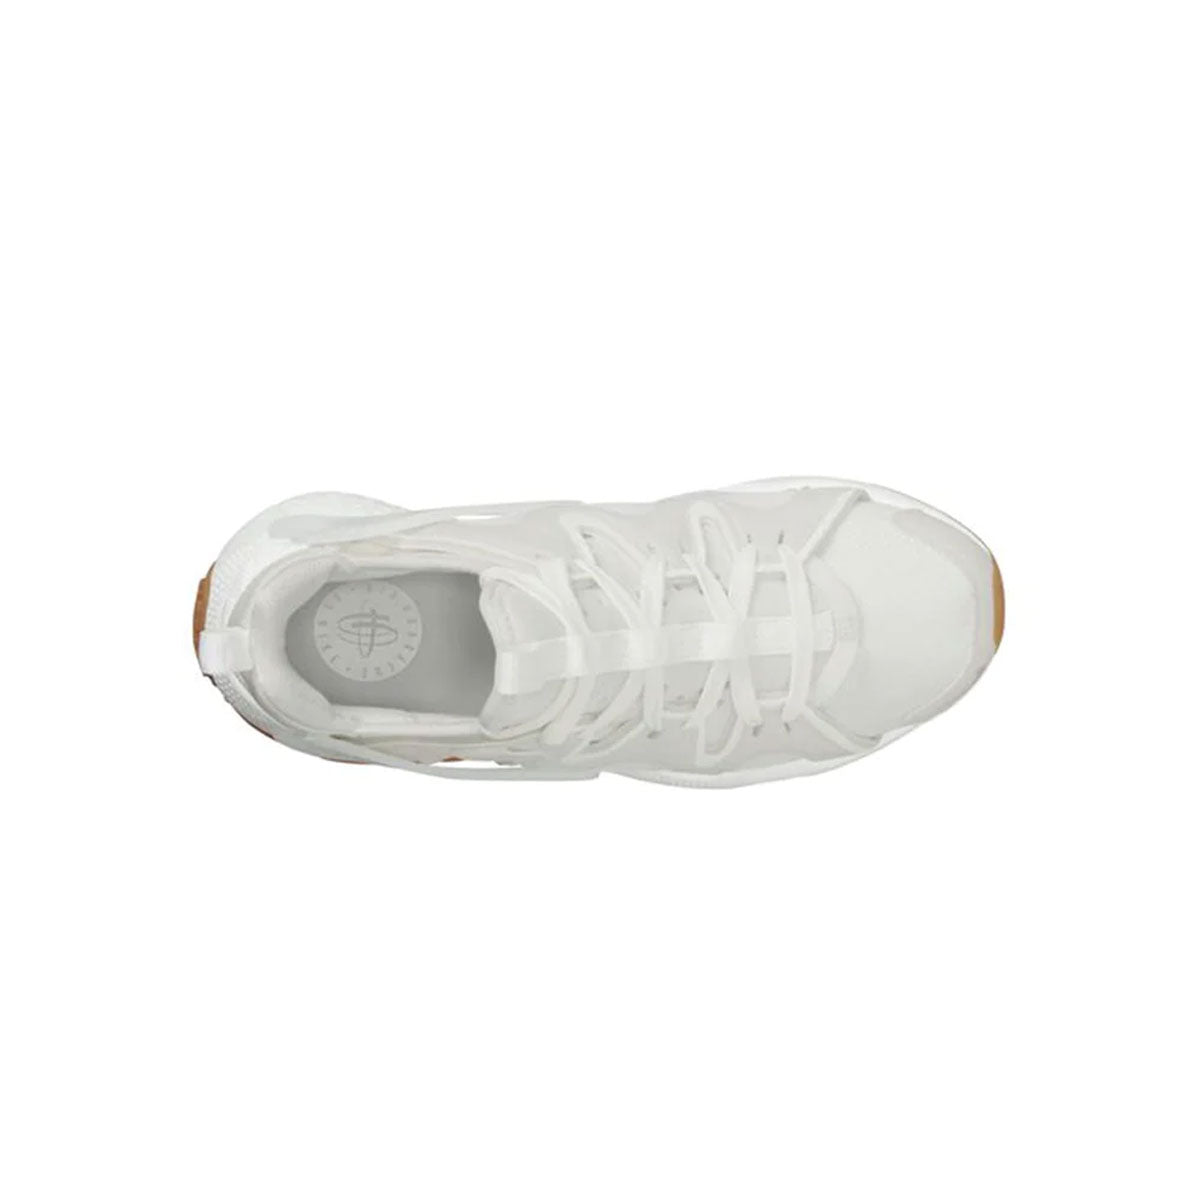 Nike Women's Air Huarache Craft White Gum